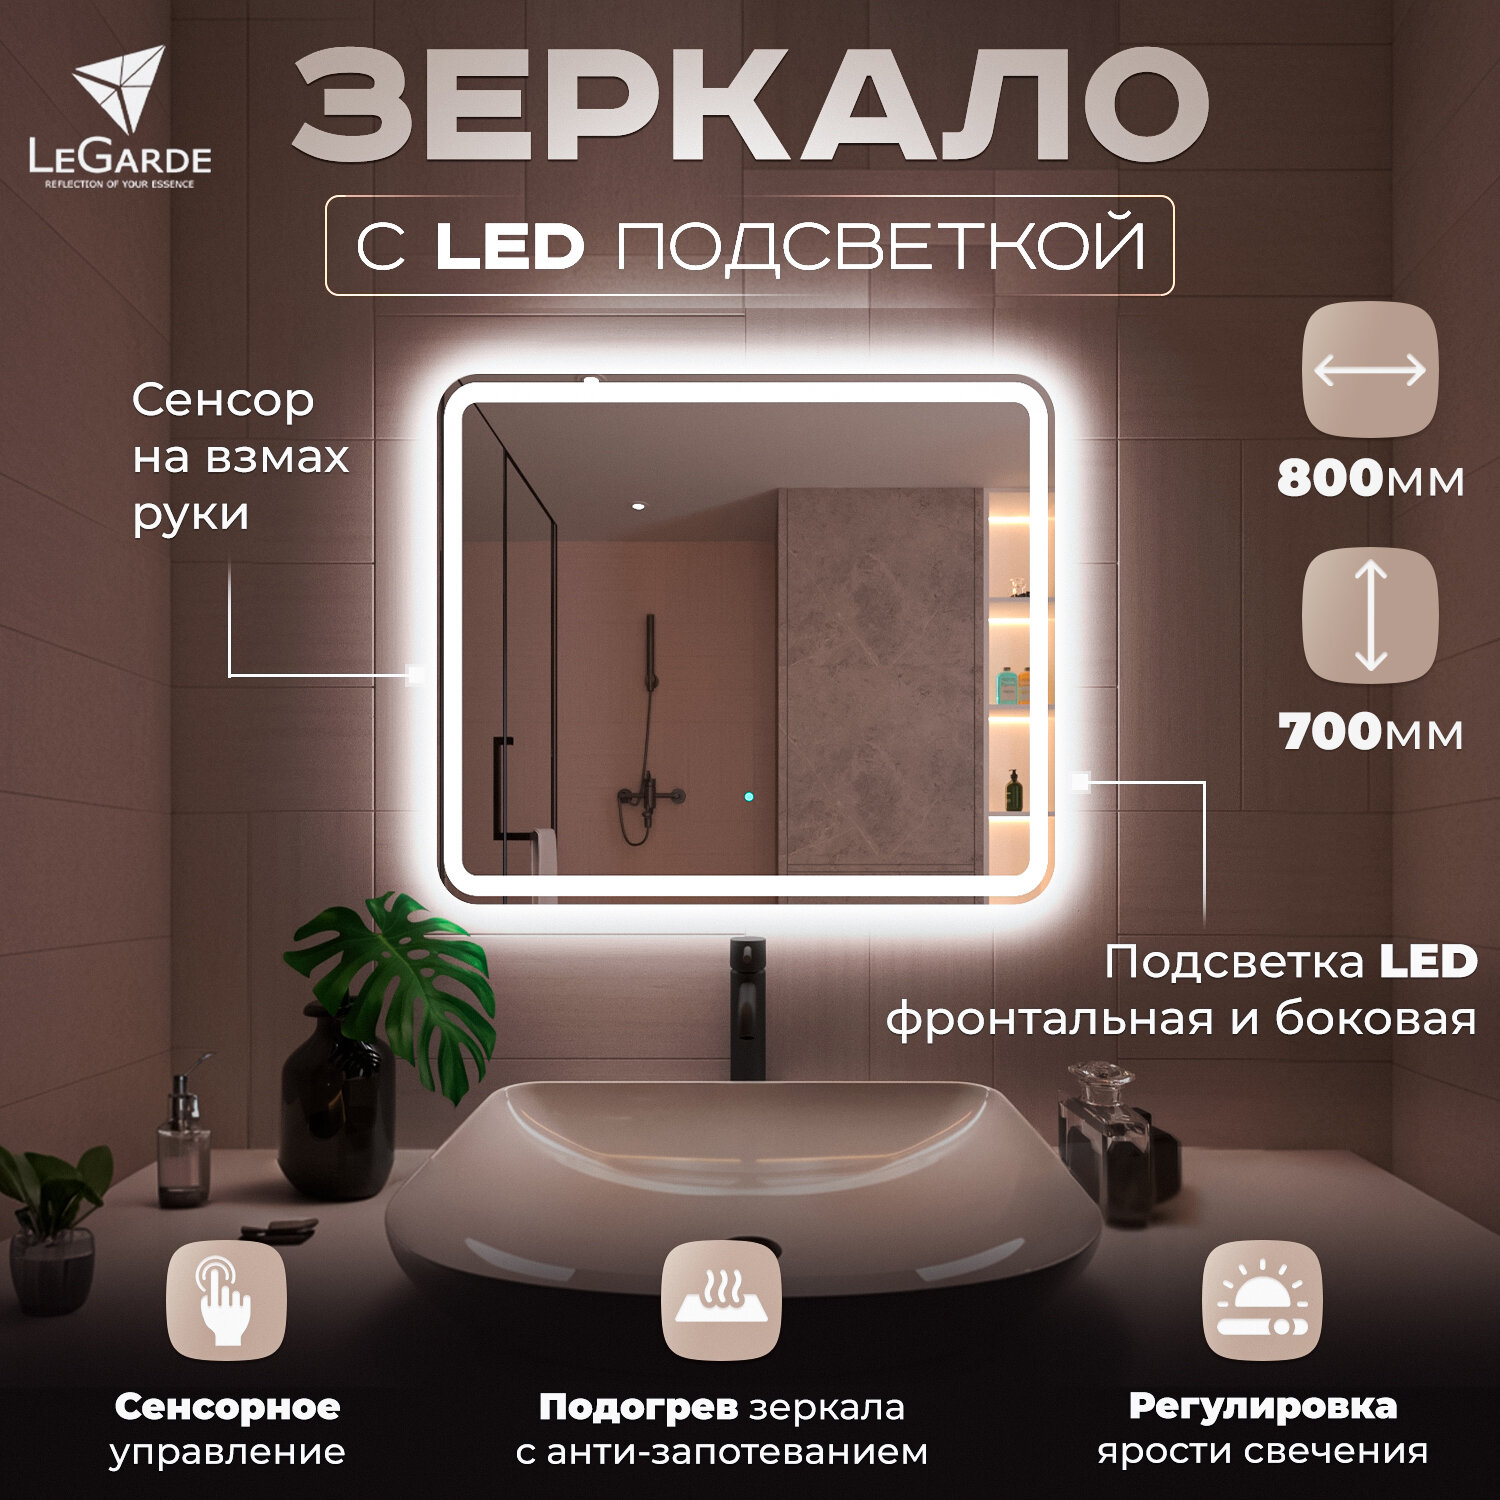 Зеркало для ванной с подсветкой подогревом LeGarde (Redwood) и сенсором на взмах руки прямоугольное регулировка яркости света. 60x80 см